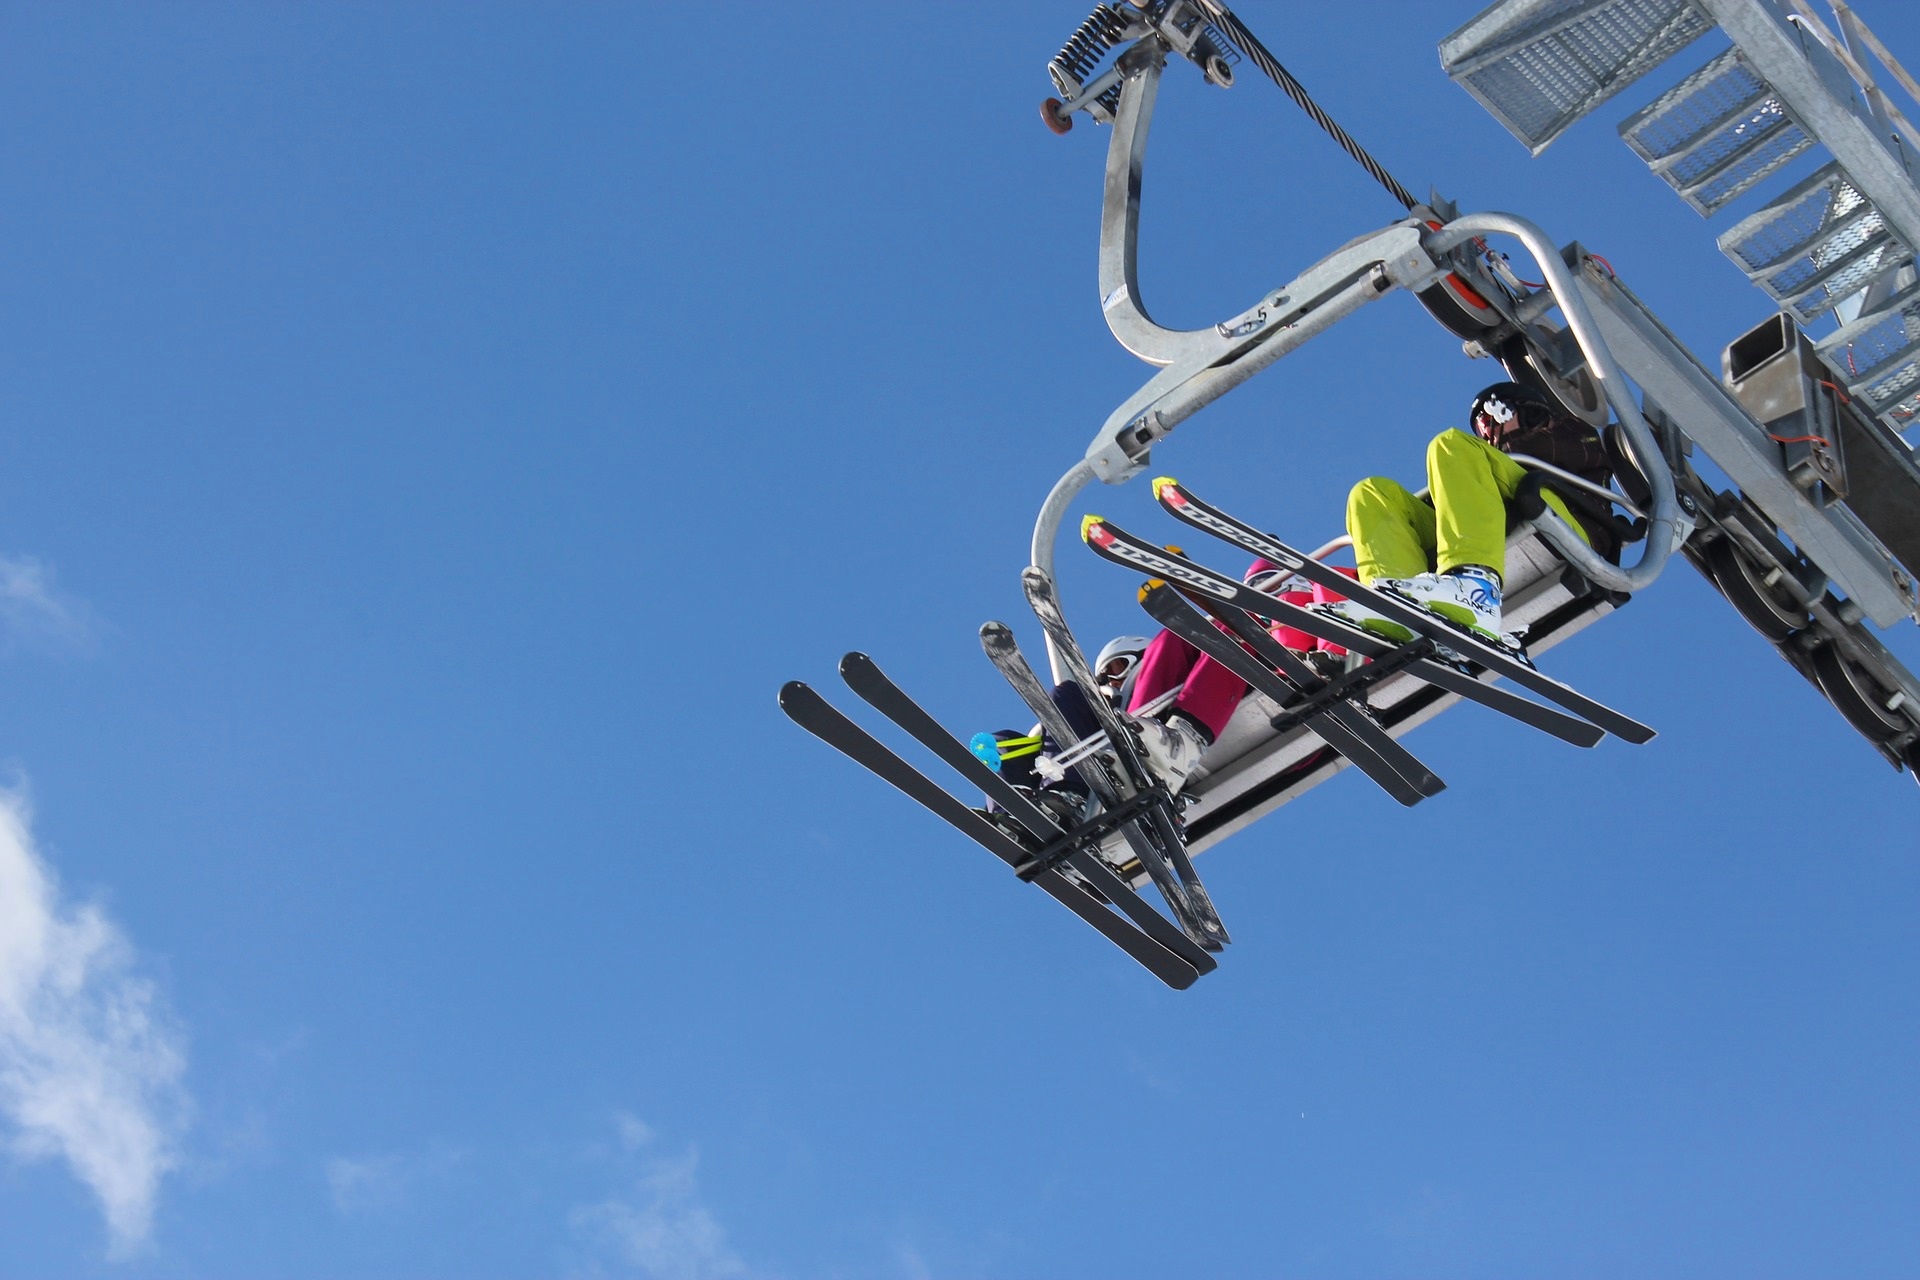 skibrille-durchblick-piste-skifahren-uv-schutz-beschlagen-optik-weissmann-oberaudorf-schibrillen-belueftungsloecher-sicht-luftzirkulationssystem-brillentraeger-gesichtsmaske